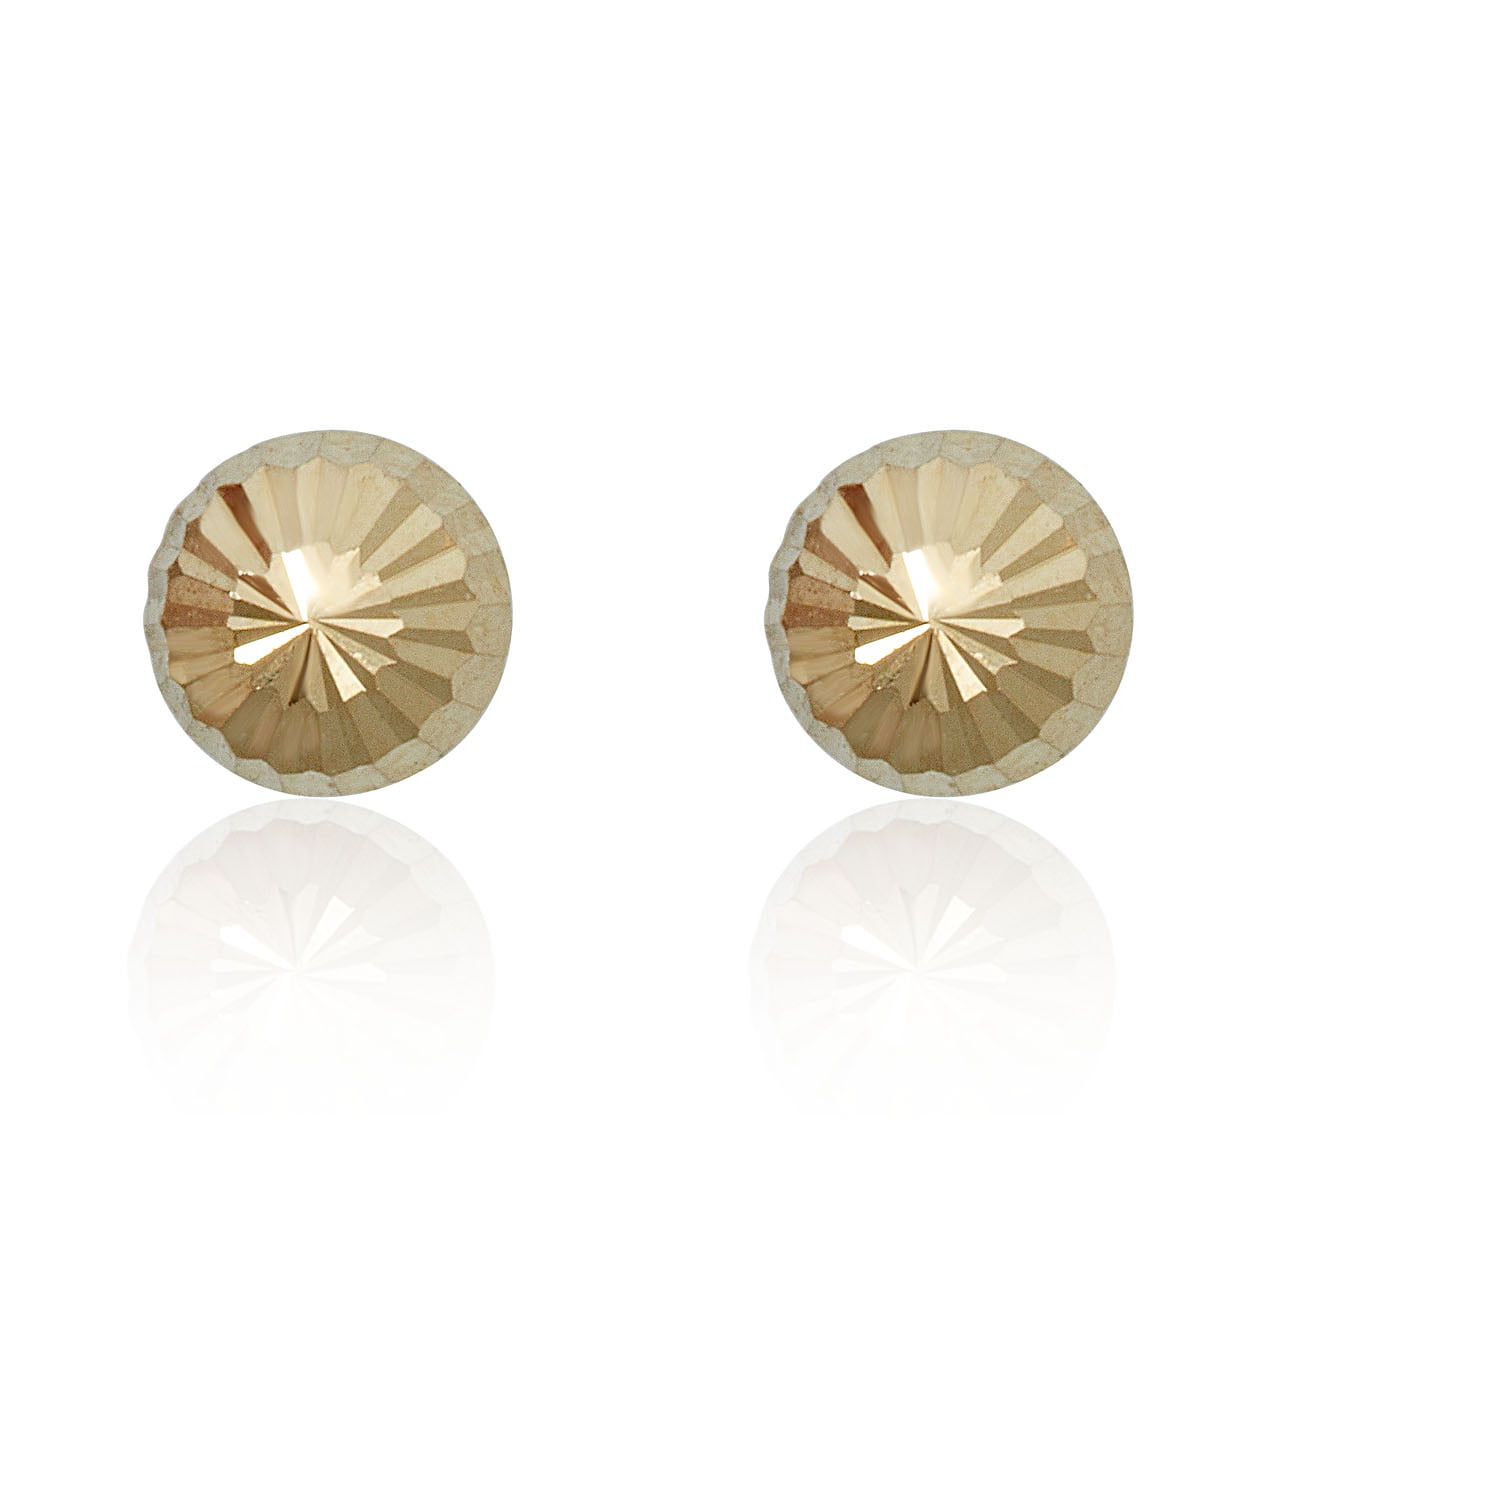 14K White Gold Double Sided Fancy Diamond Cut Ball Earrings 